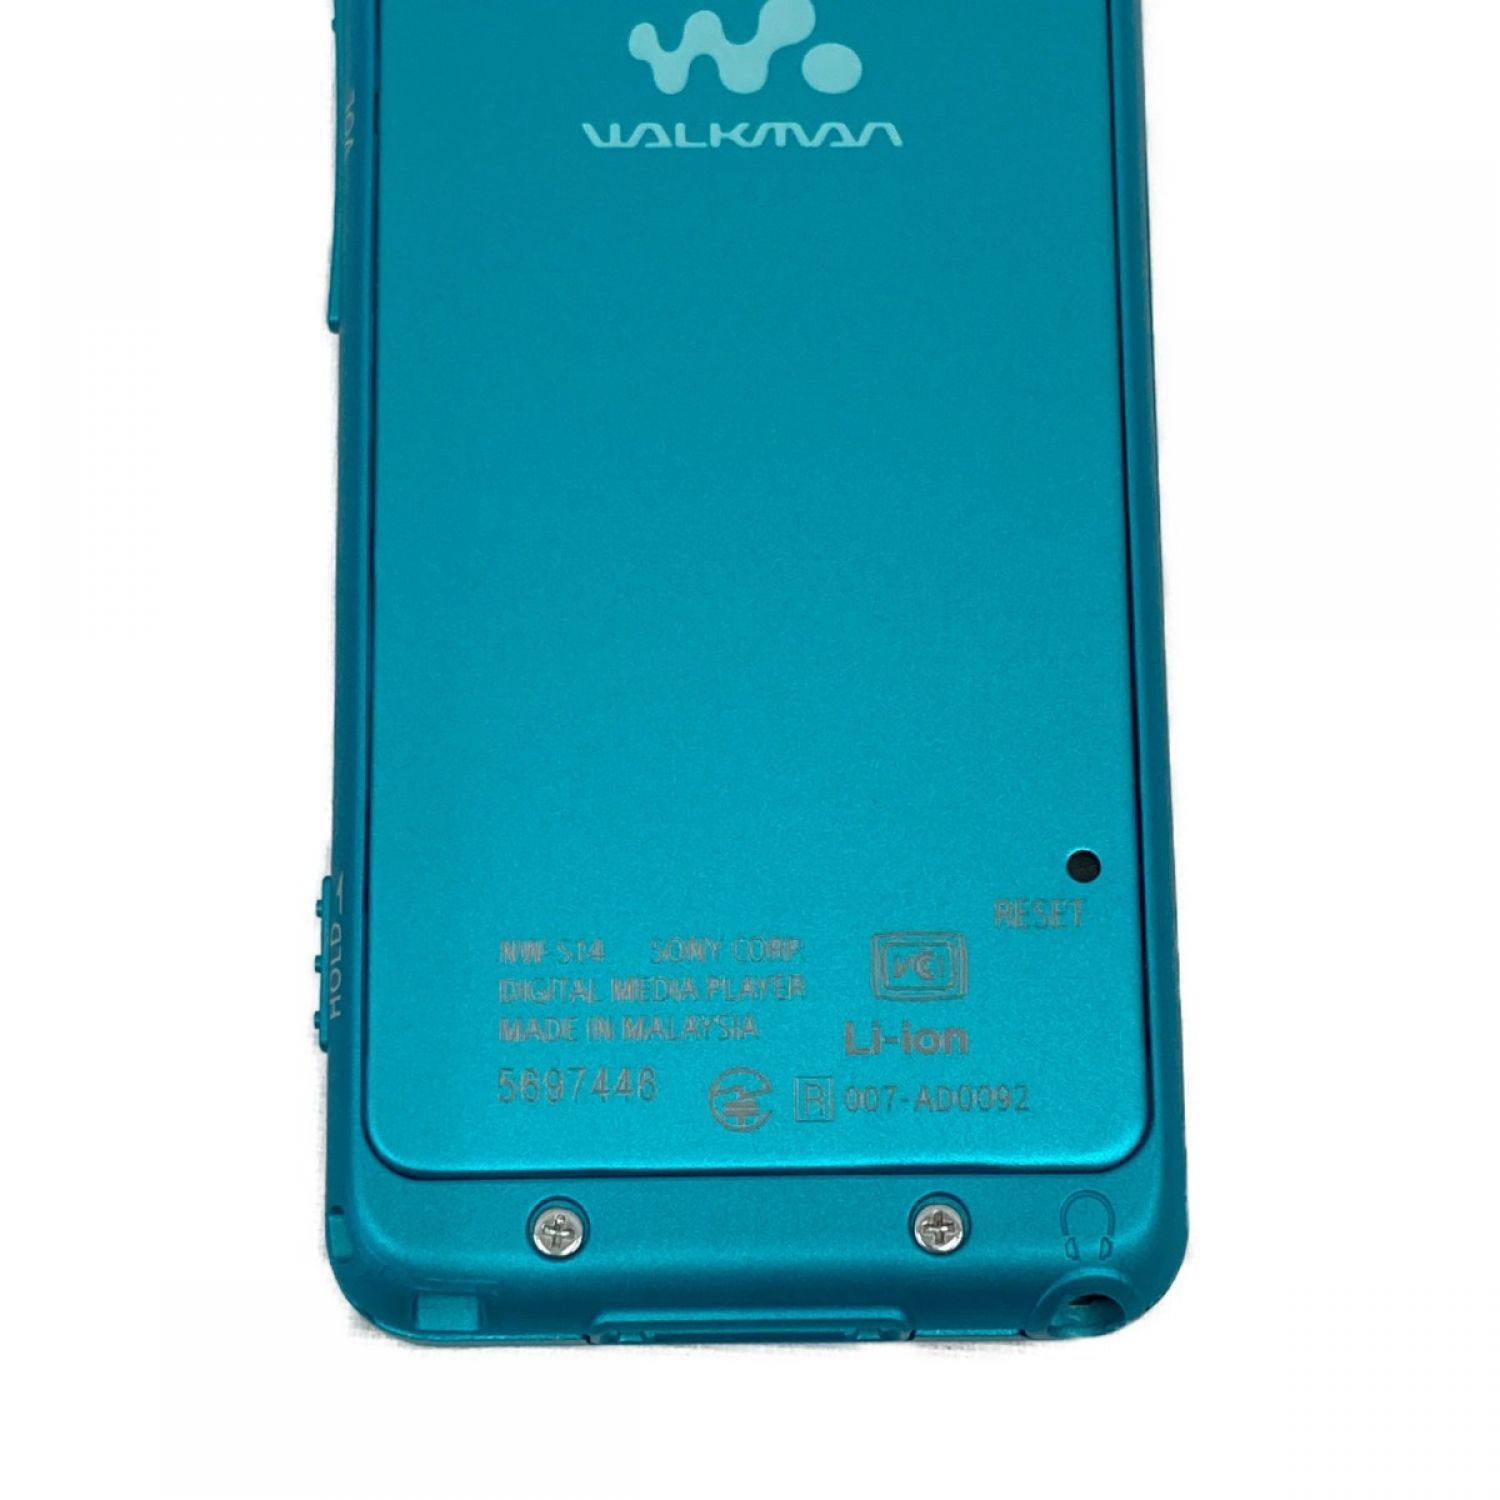 〇〇SONY ソニー WALK MAN ウォークマン 8GB ポータブルプレーヤー  NW-S14 本体のみ